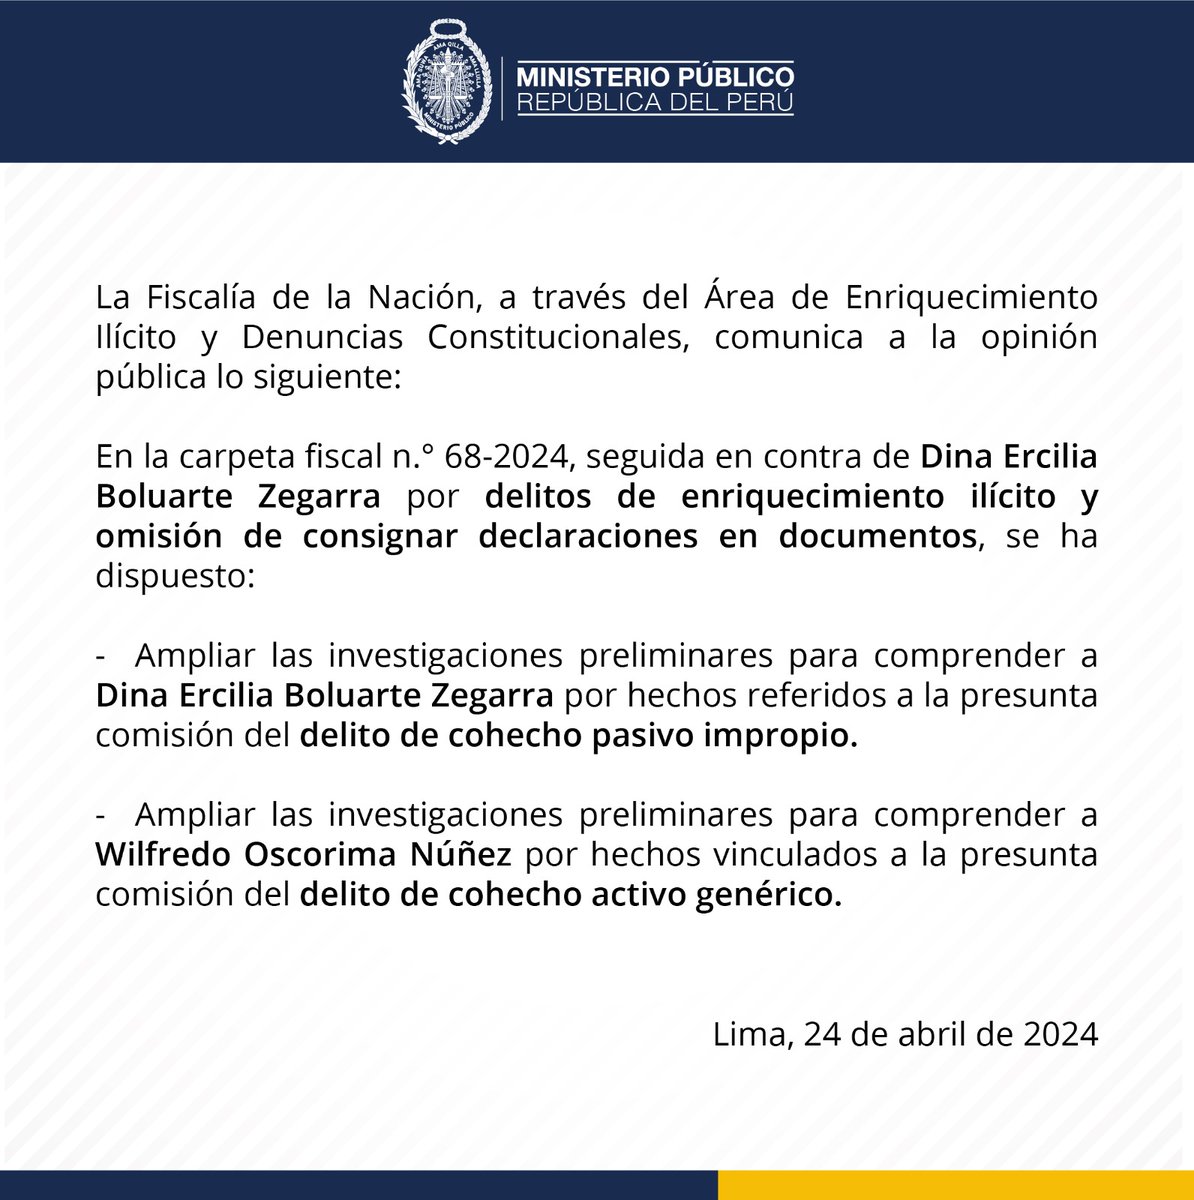 📢 Fiscalía de la Nación informa que dispuso la ampliación de la investigación contra Dina Boluarte Zegarra y Wilfredo Oscorima Núñez.